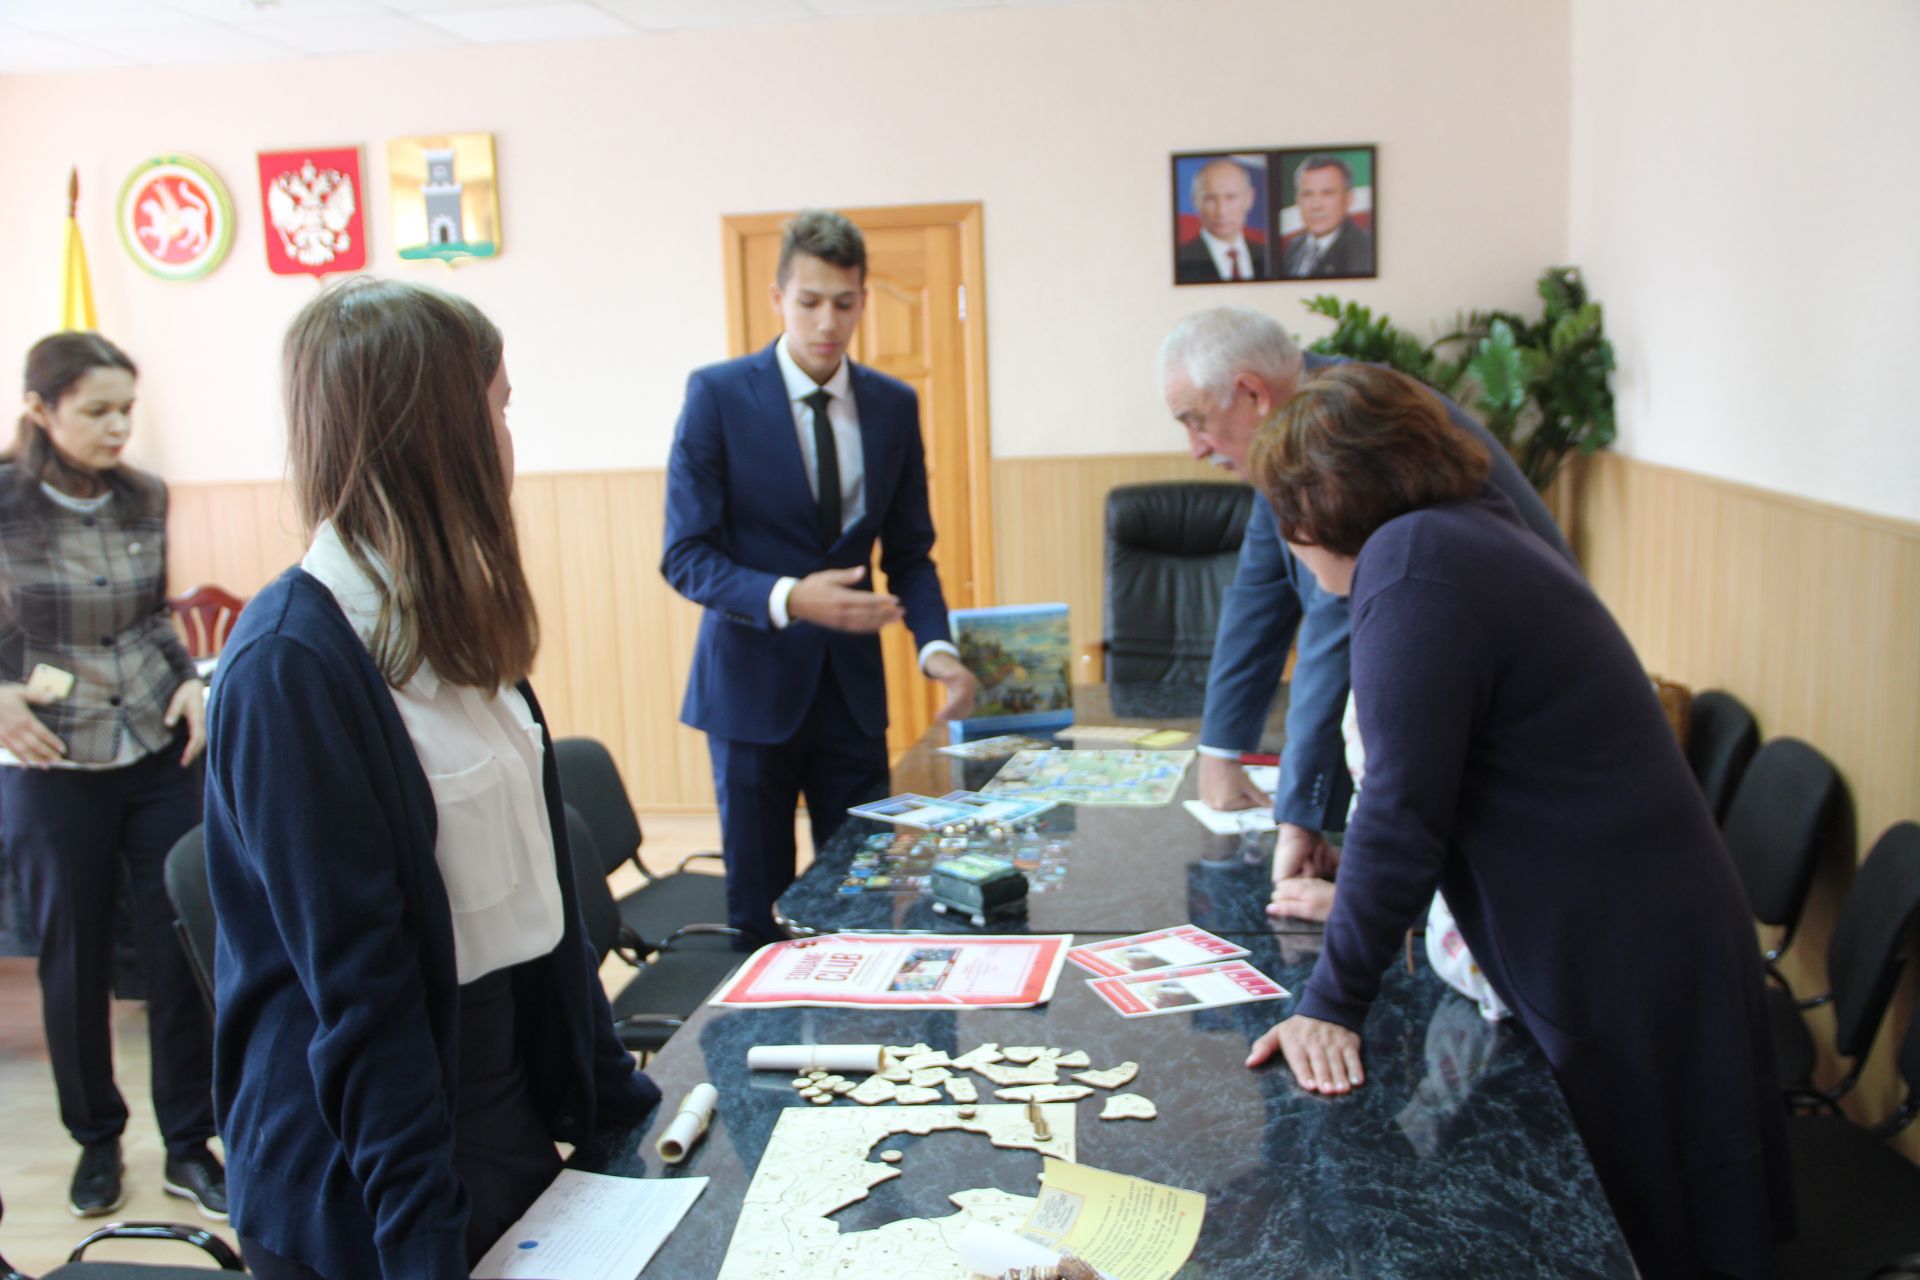 Молодые предприниматели Казани презентовали проект в Спасском районе (ФОТО)